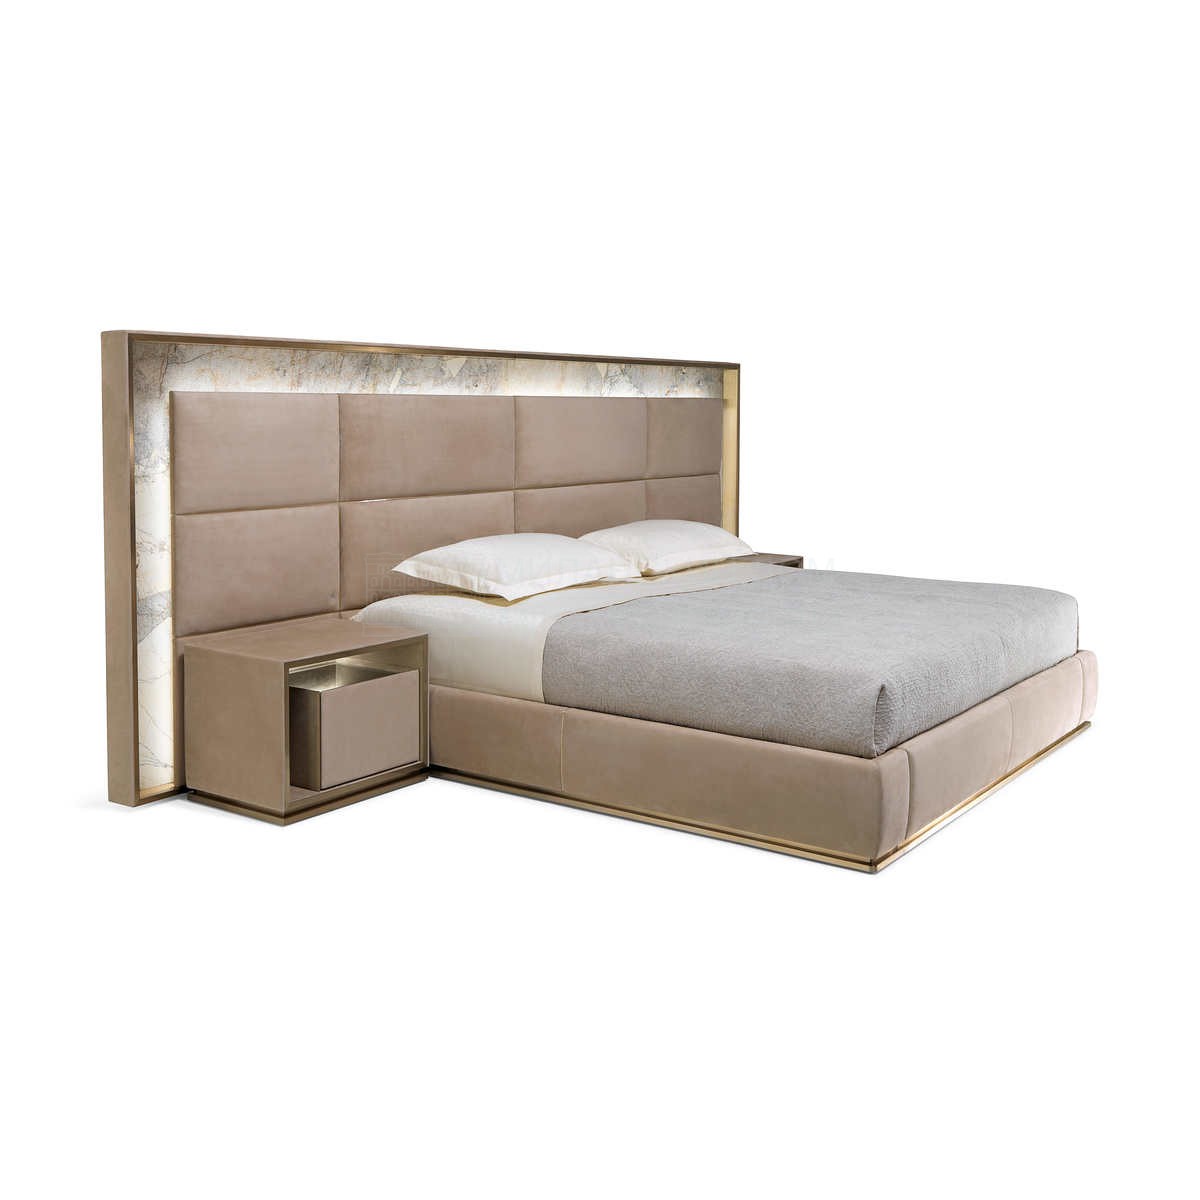 Двуспальная кровать Aubade bed из Италии фабрики IPE CAVALLI VISIONNAIRE